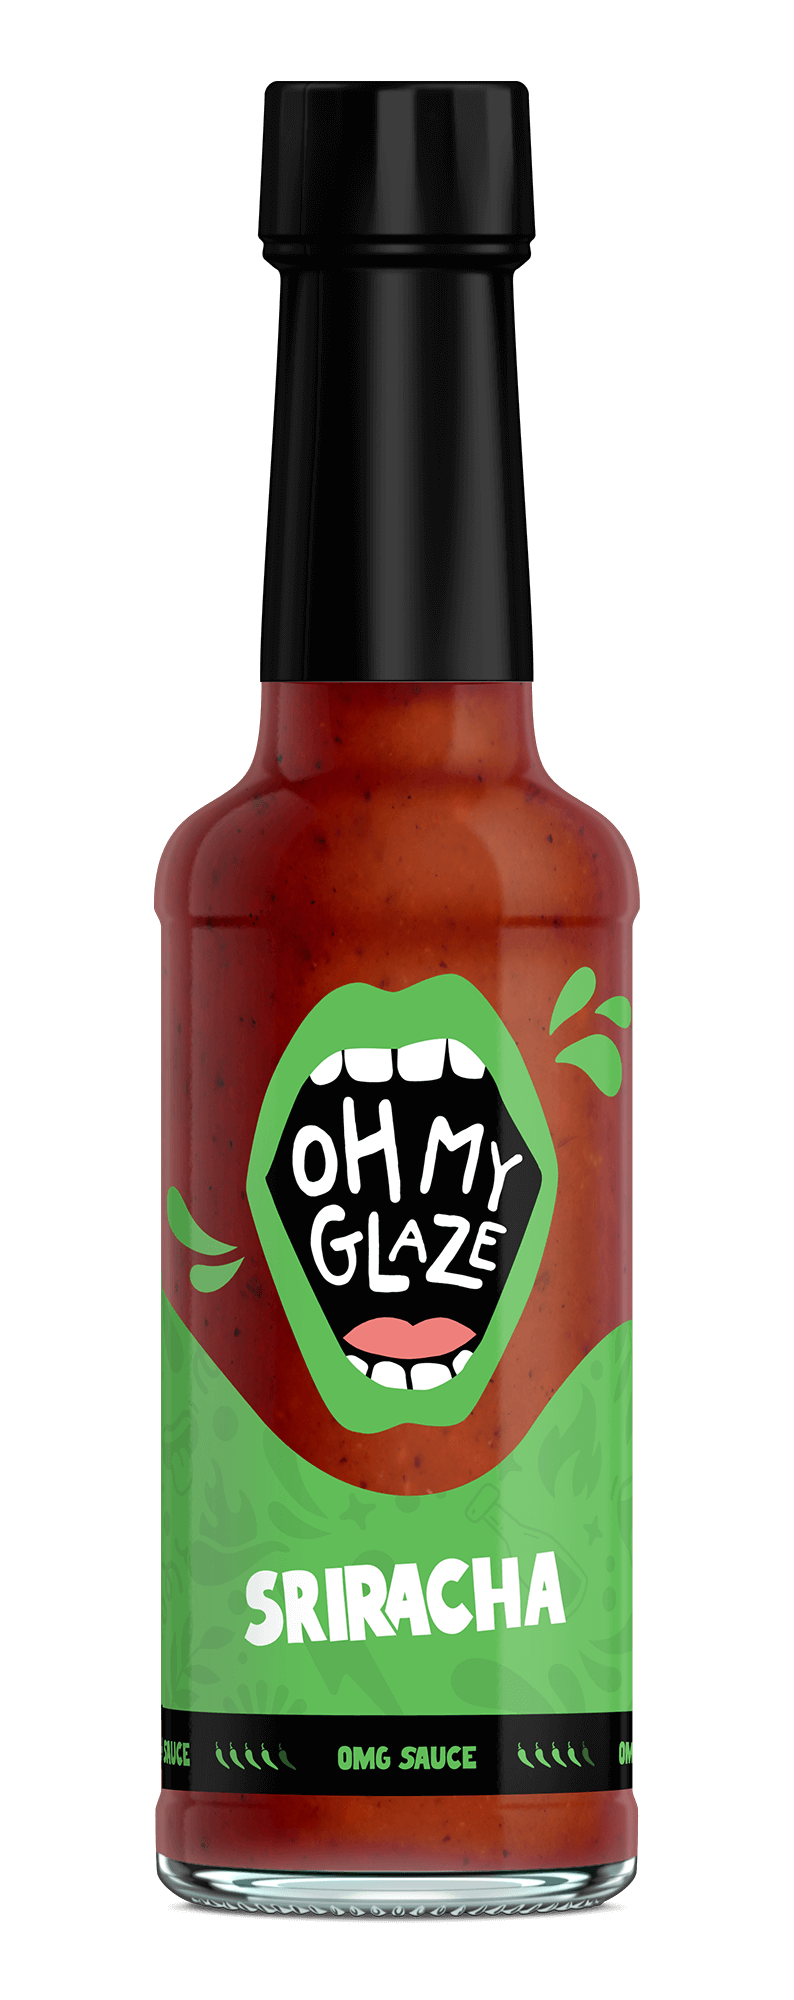 OX Sriracha Hot Chili Sauce 29oz (830g) – Mishima Foods USA